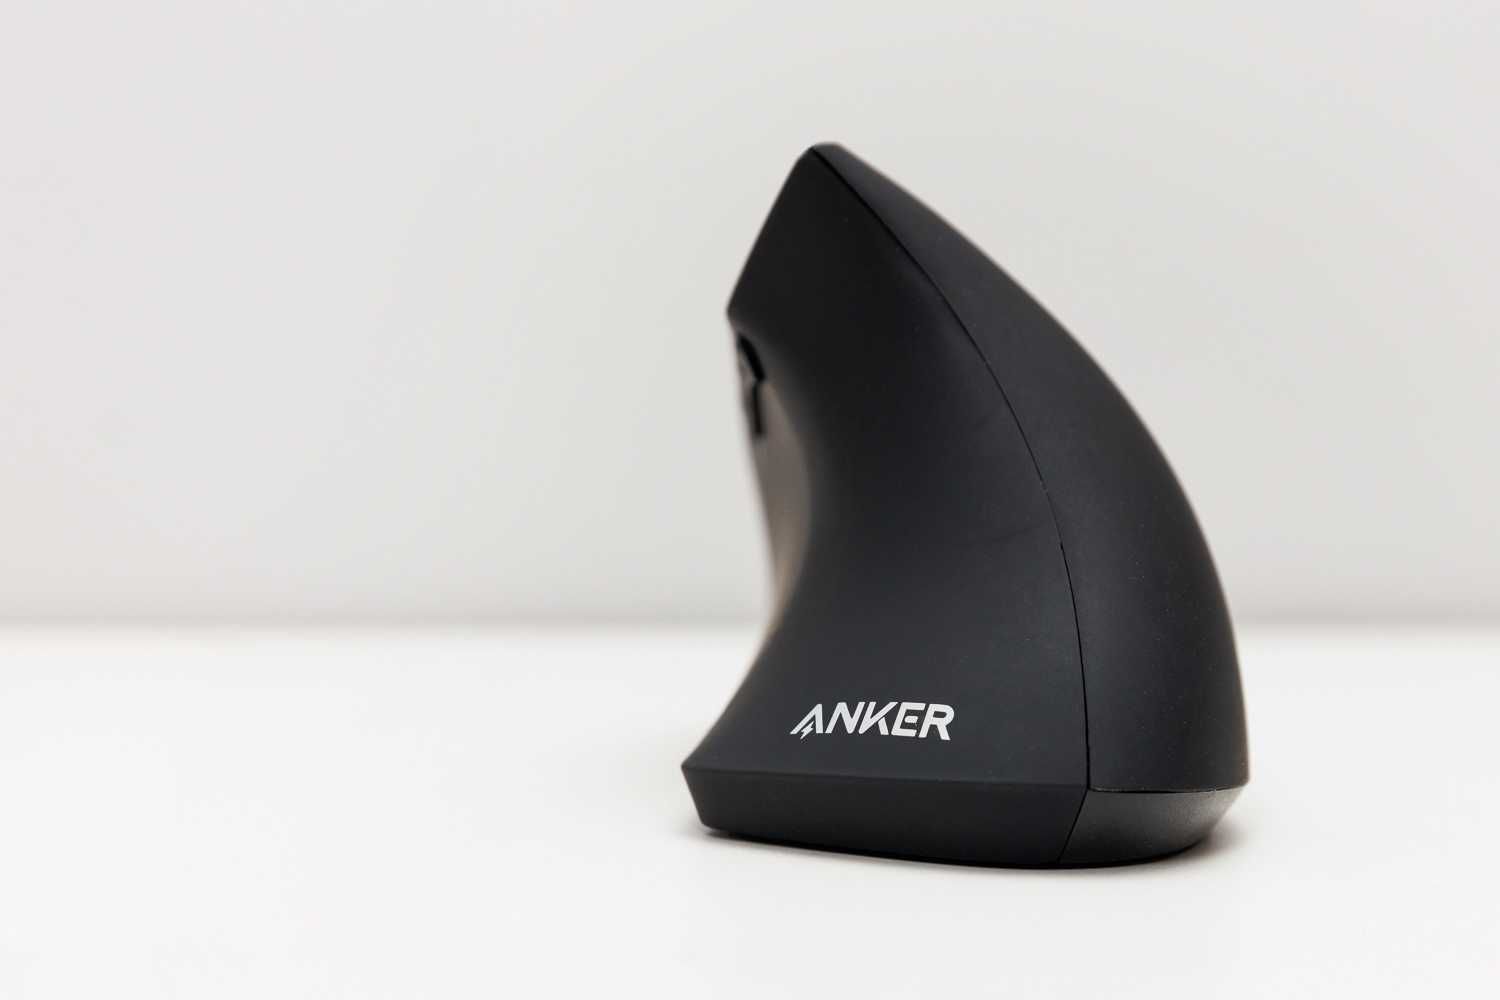 Bezprzewodowa, pionowa, ergonomiczna mysz optyczna Anker 2.4